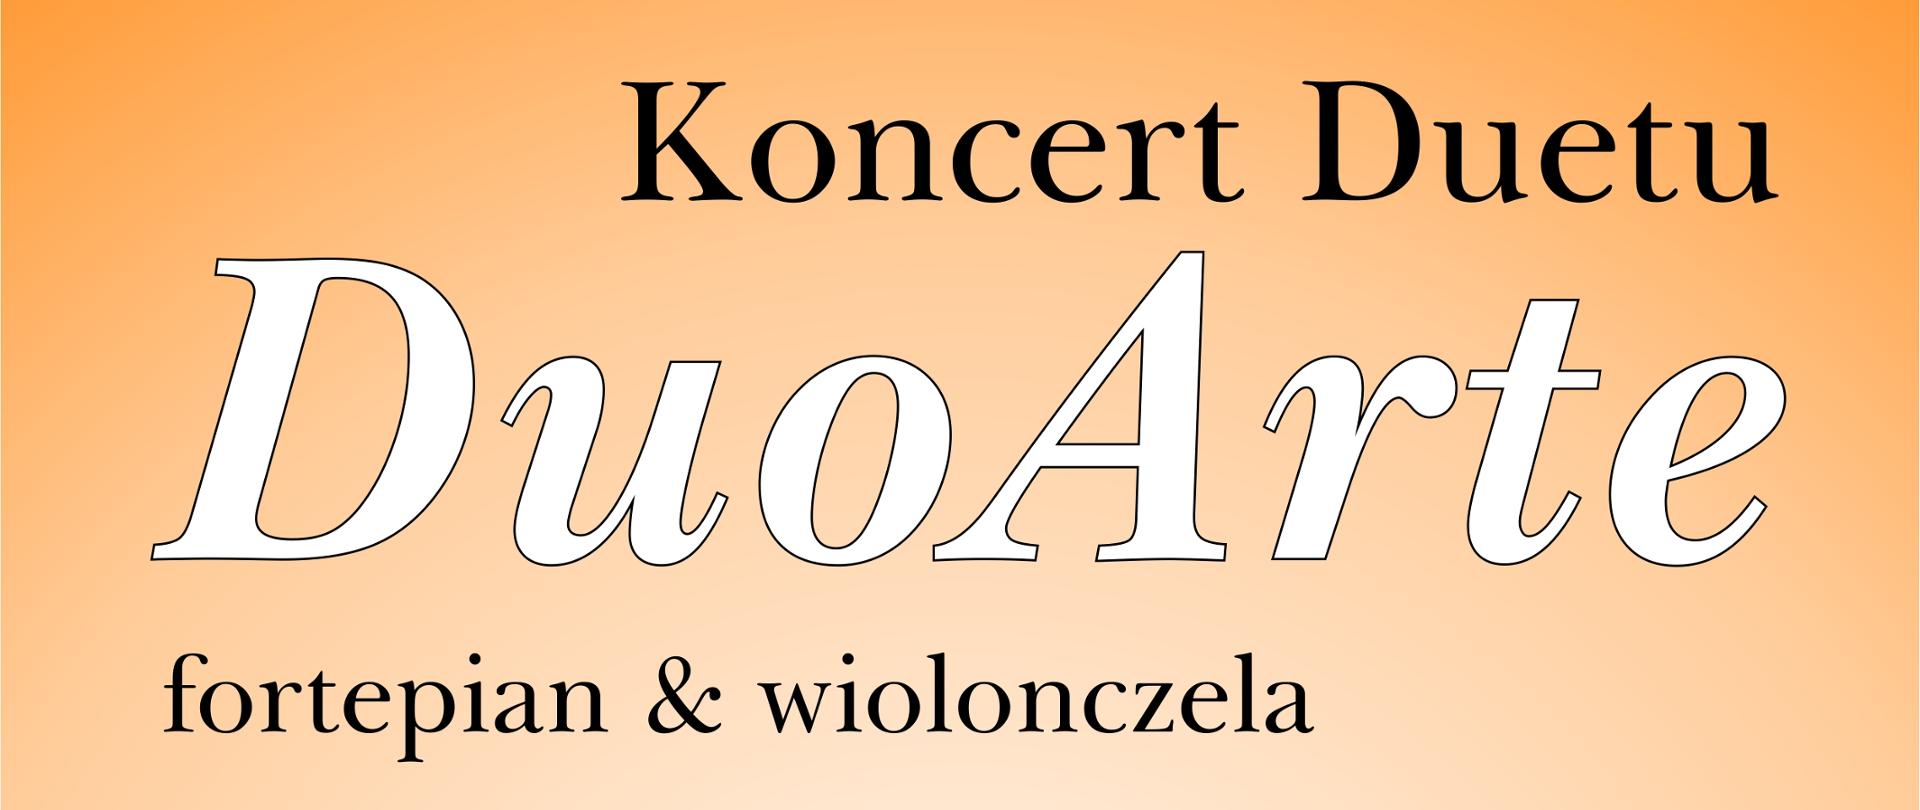 Koncert Duetu DuoArte - fortepian & wiolonczela dnia 15 maja w Auli Państwowej Szkoły Muzycznej w Zbąszyniu o godzinie 17:00. Wstęp wolny